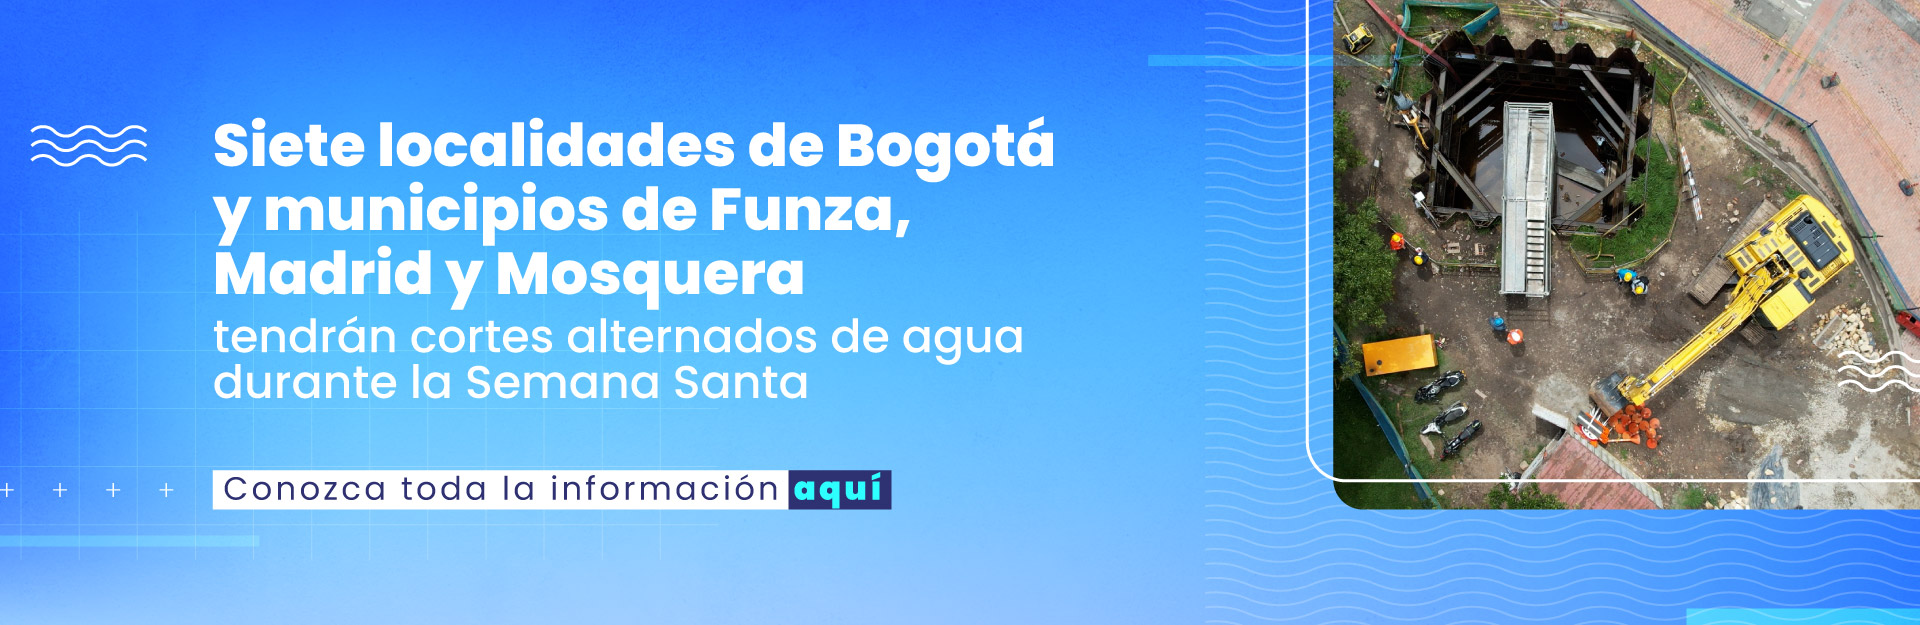 Siete localidades de Bogotá y municipios de Funza, Madrid y Mosquera tendrán cortes alternados de agua durante la Semana Santa